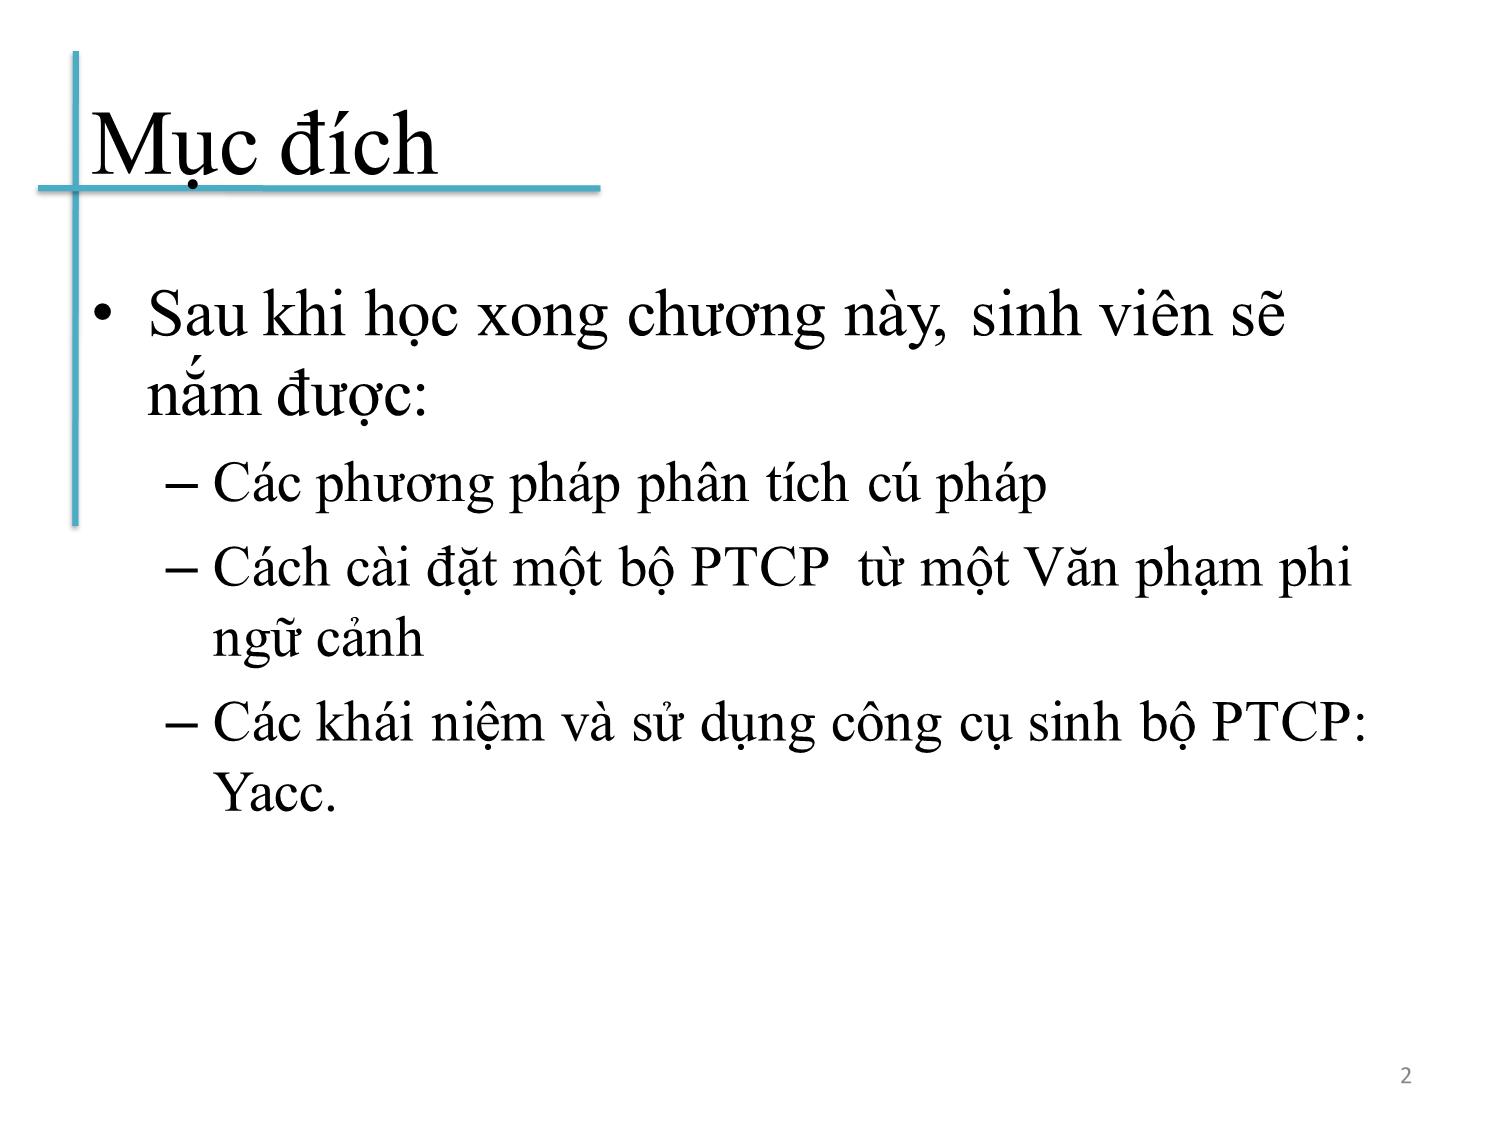 Bài giảng Chương trình dịch - Bài 3: Phân tích cú pháp từ trên xuống - Hoàng Anh Việt trang 2